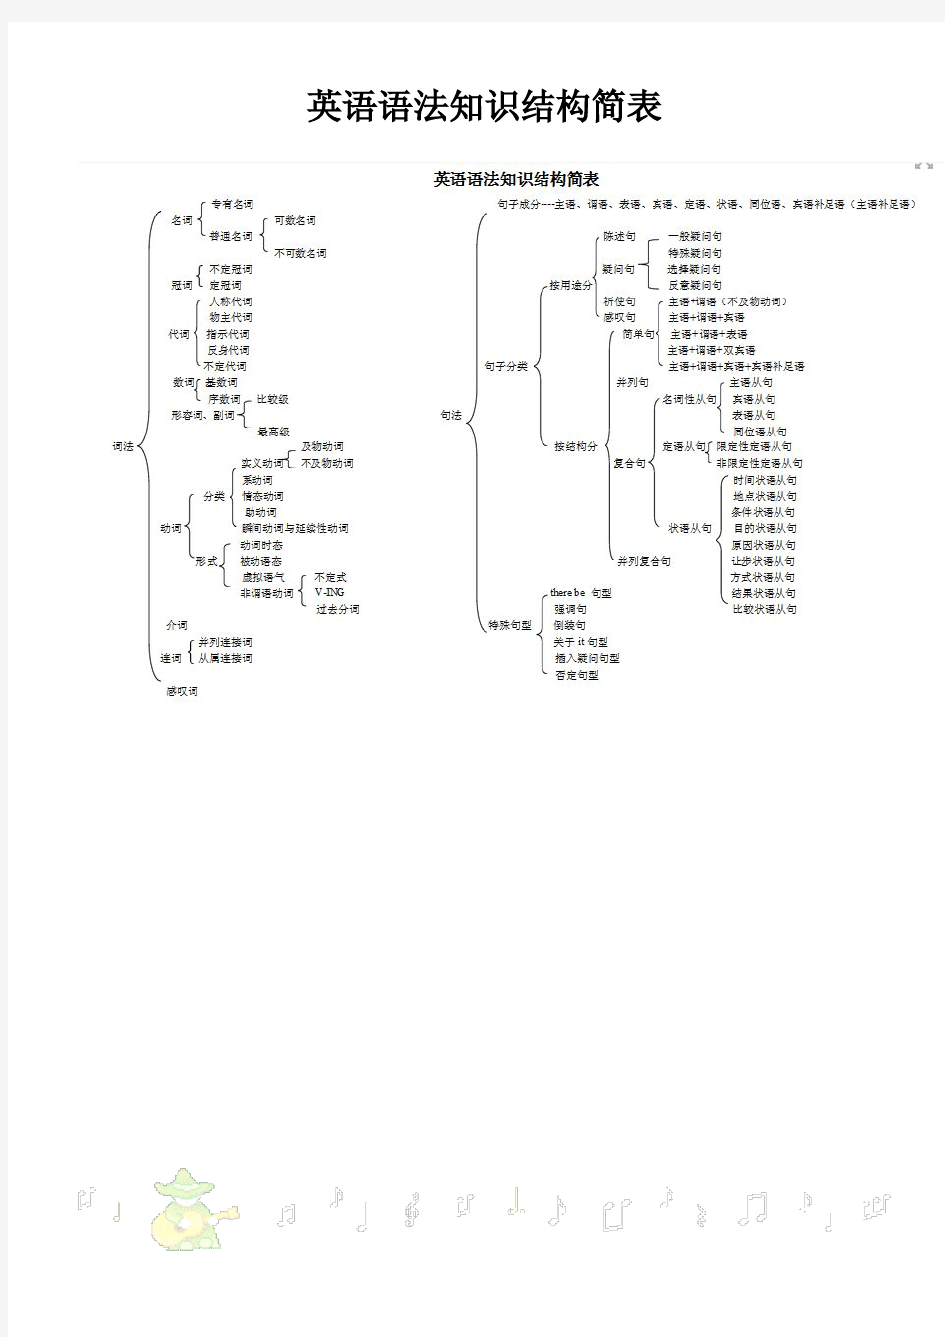 英语语法框架图解英语语法合集打印、排版优.pdf